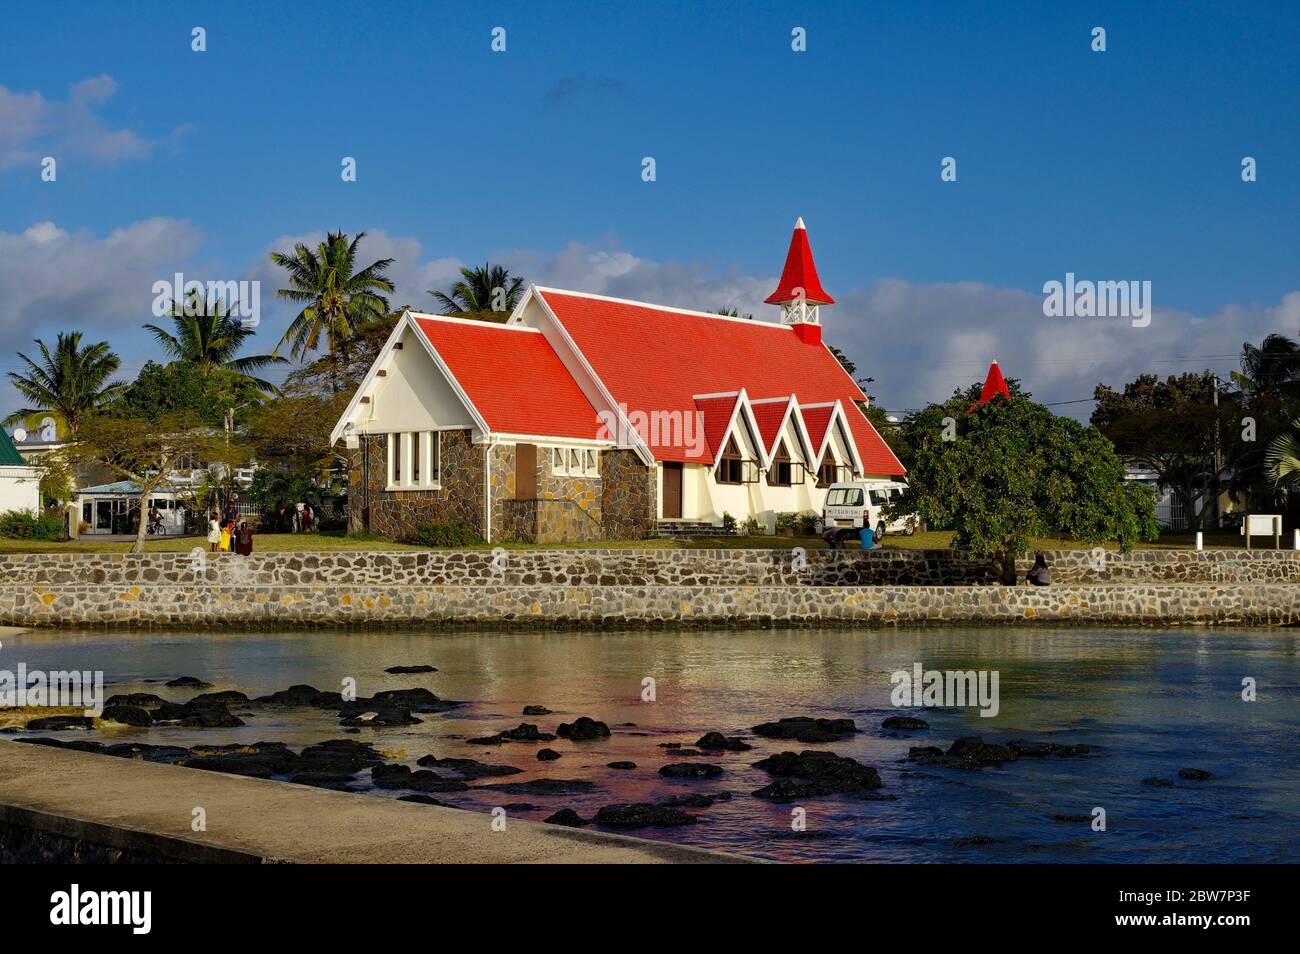 CAP MALHEUREUX / MAURICE - 13 AOÛT 2018 : la célèbre église notre Dame Auxiliatrice au Cap Malheureux, au nord de l'île Maurice, en Afrique. Banque D'Images